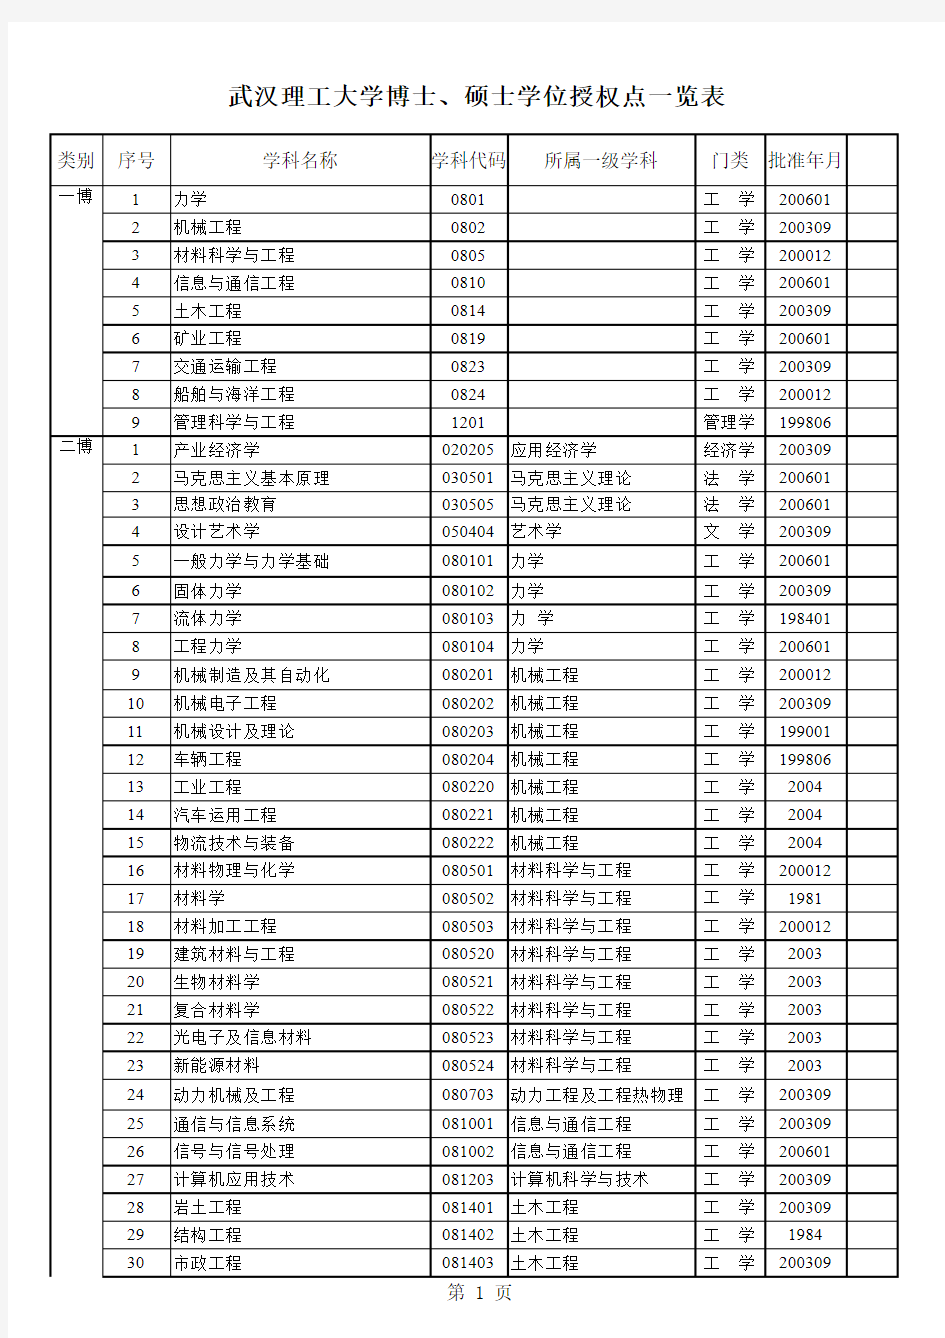 武汉理工大学博士、硕士学位授权点一览表(2009年)